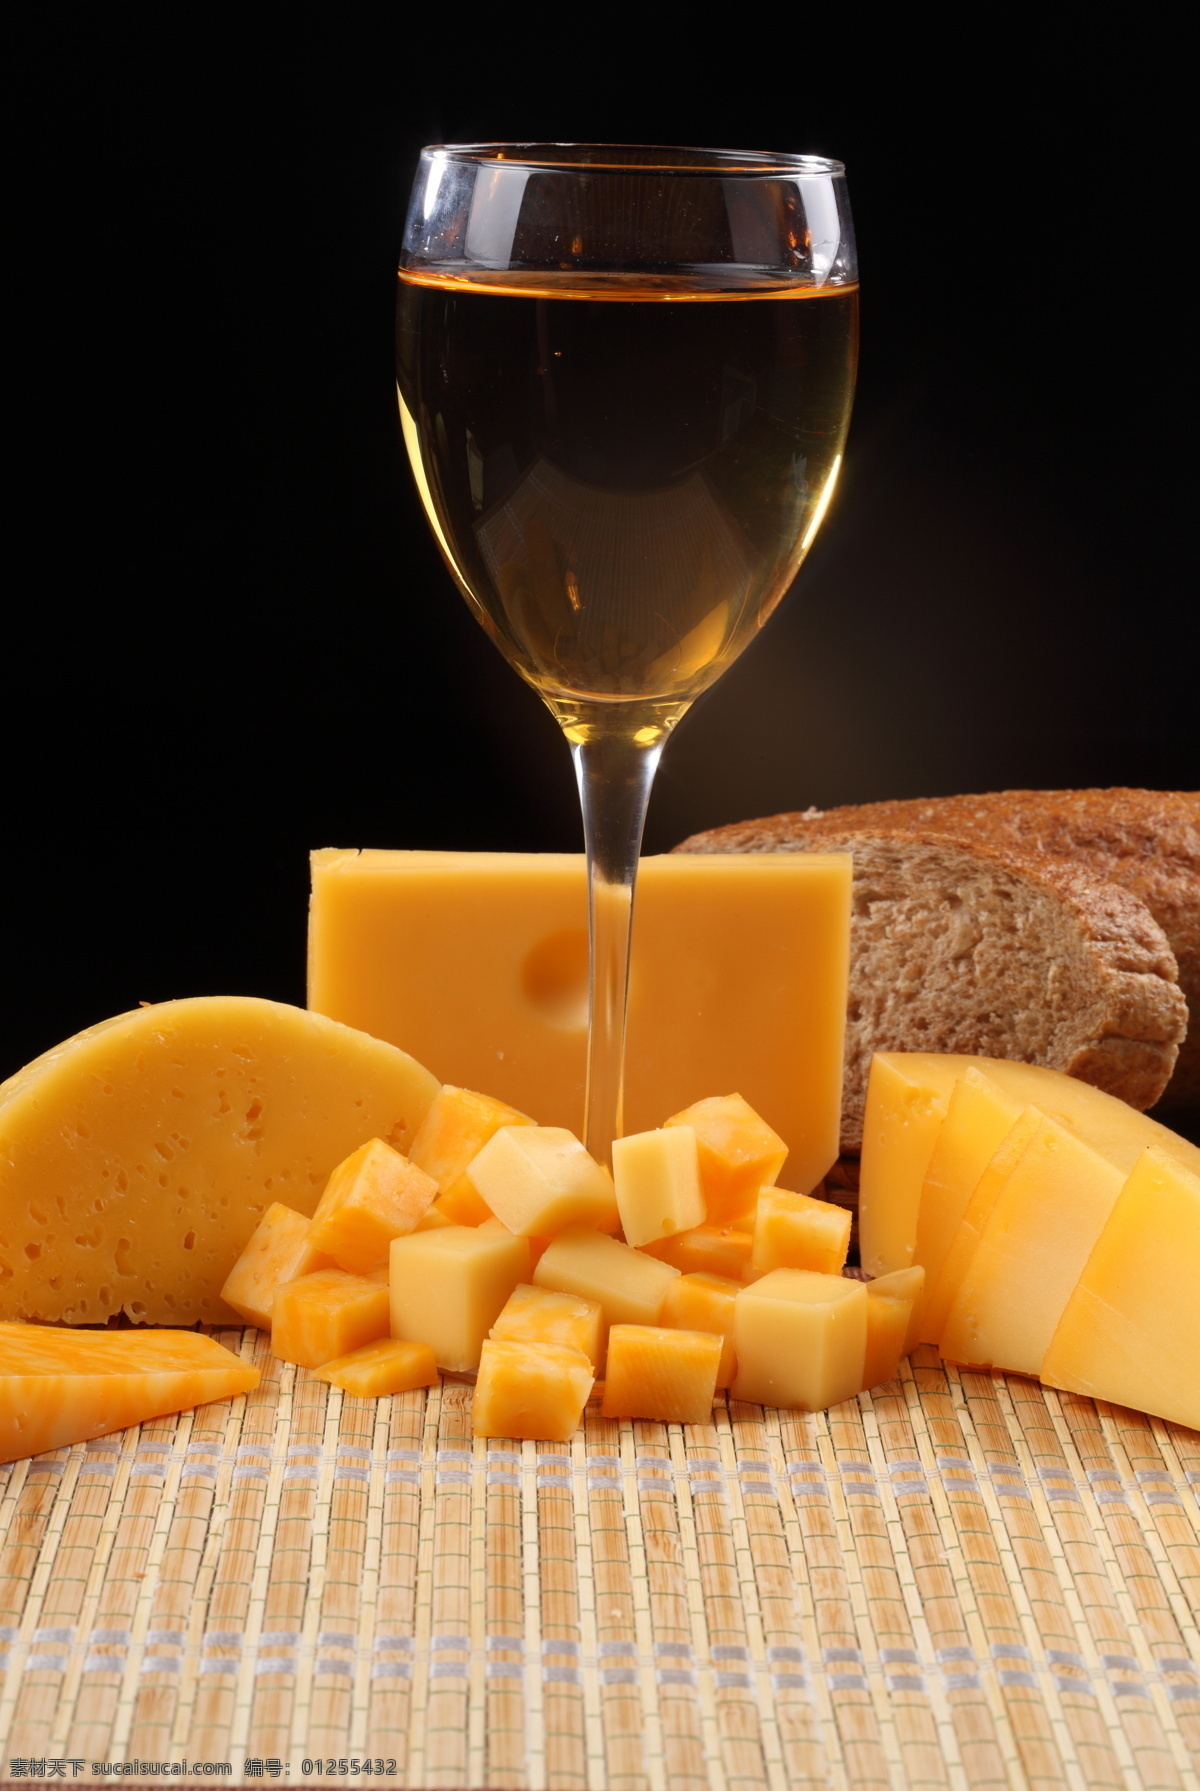 奶酪 杯酒 奶酪美酒 面包 葡萄 葡萄酒 酒 酒杯 玻璃杯 高脚杯 摄影图 美食图片 餐饮美食